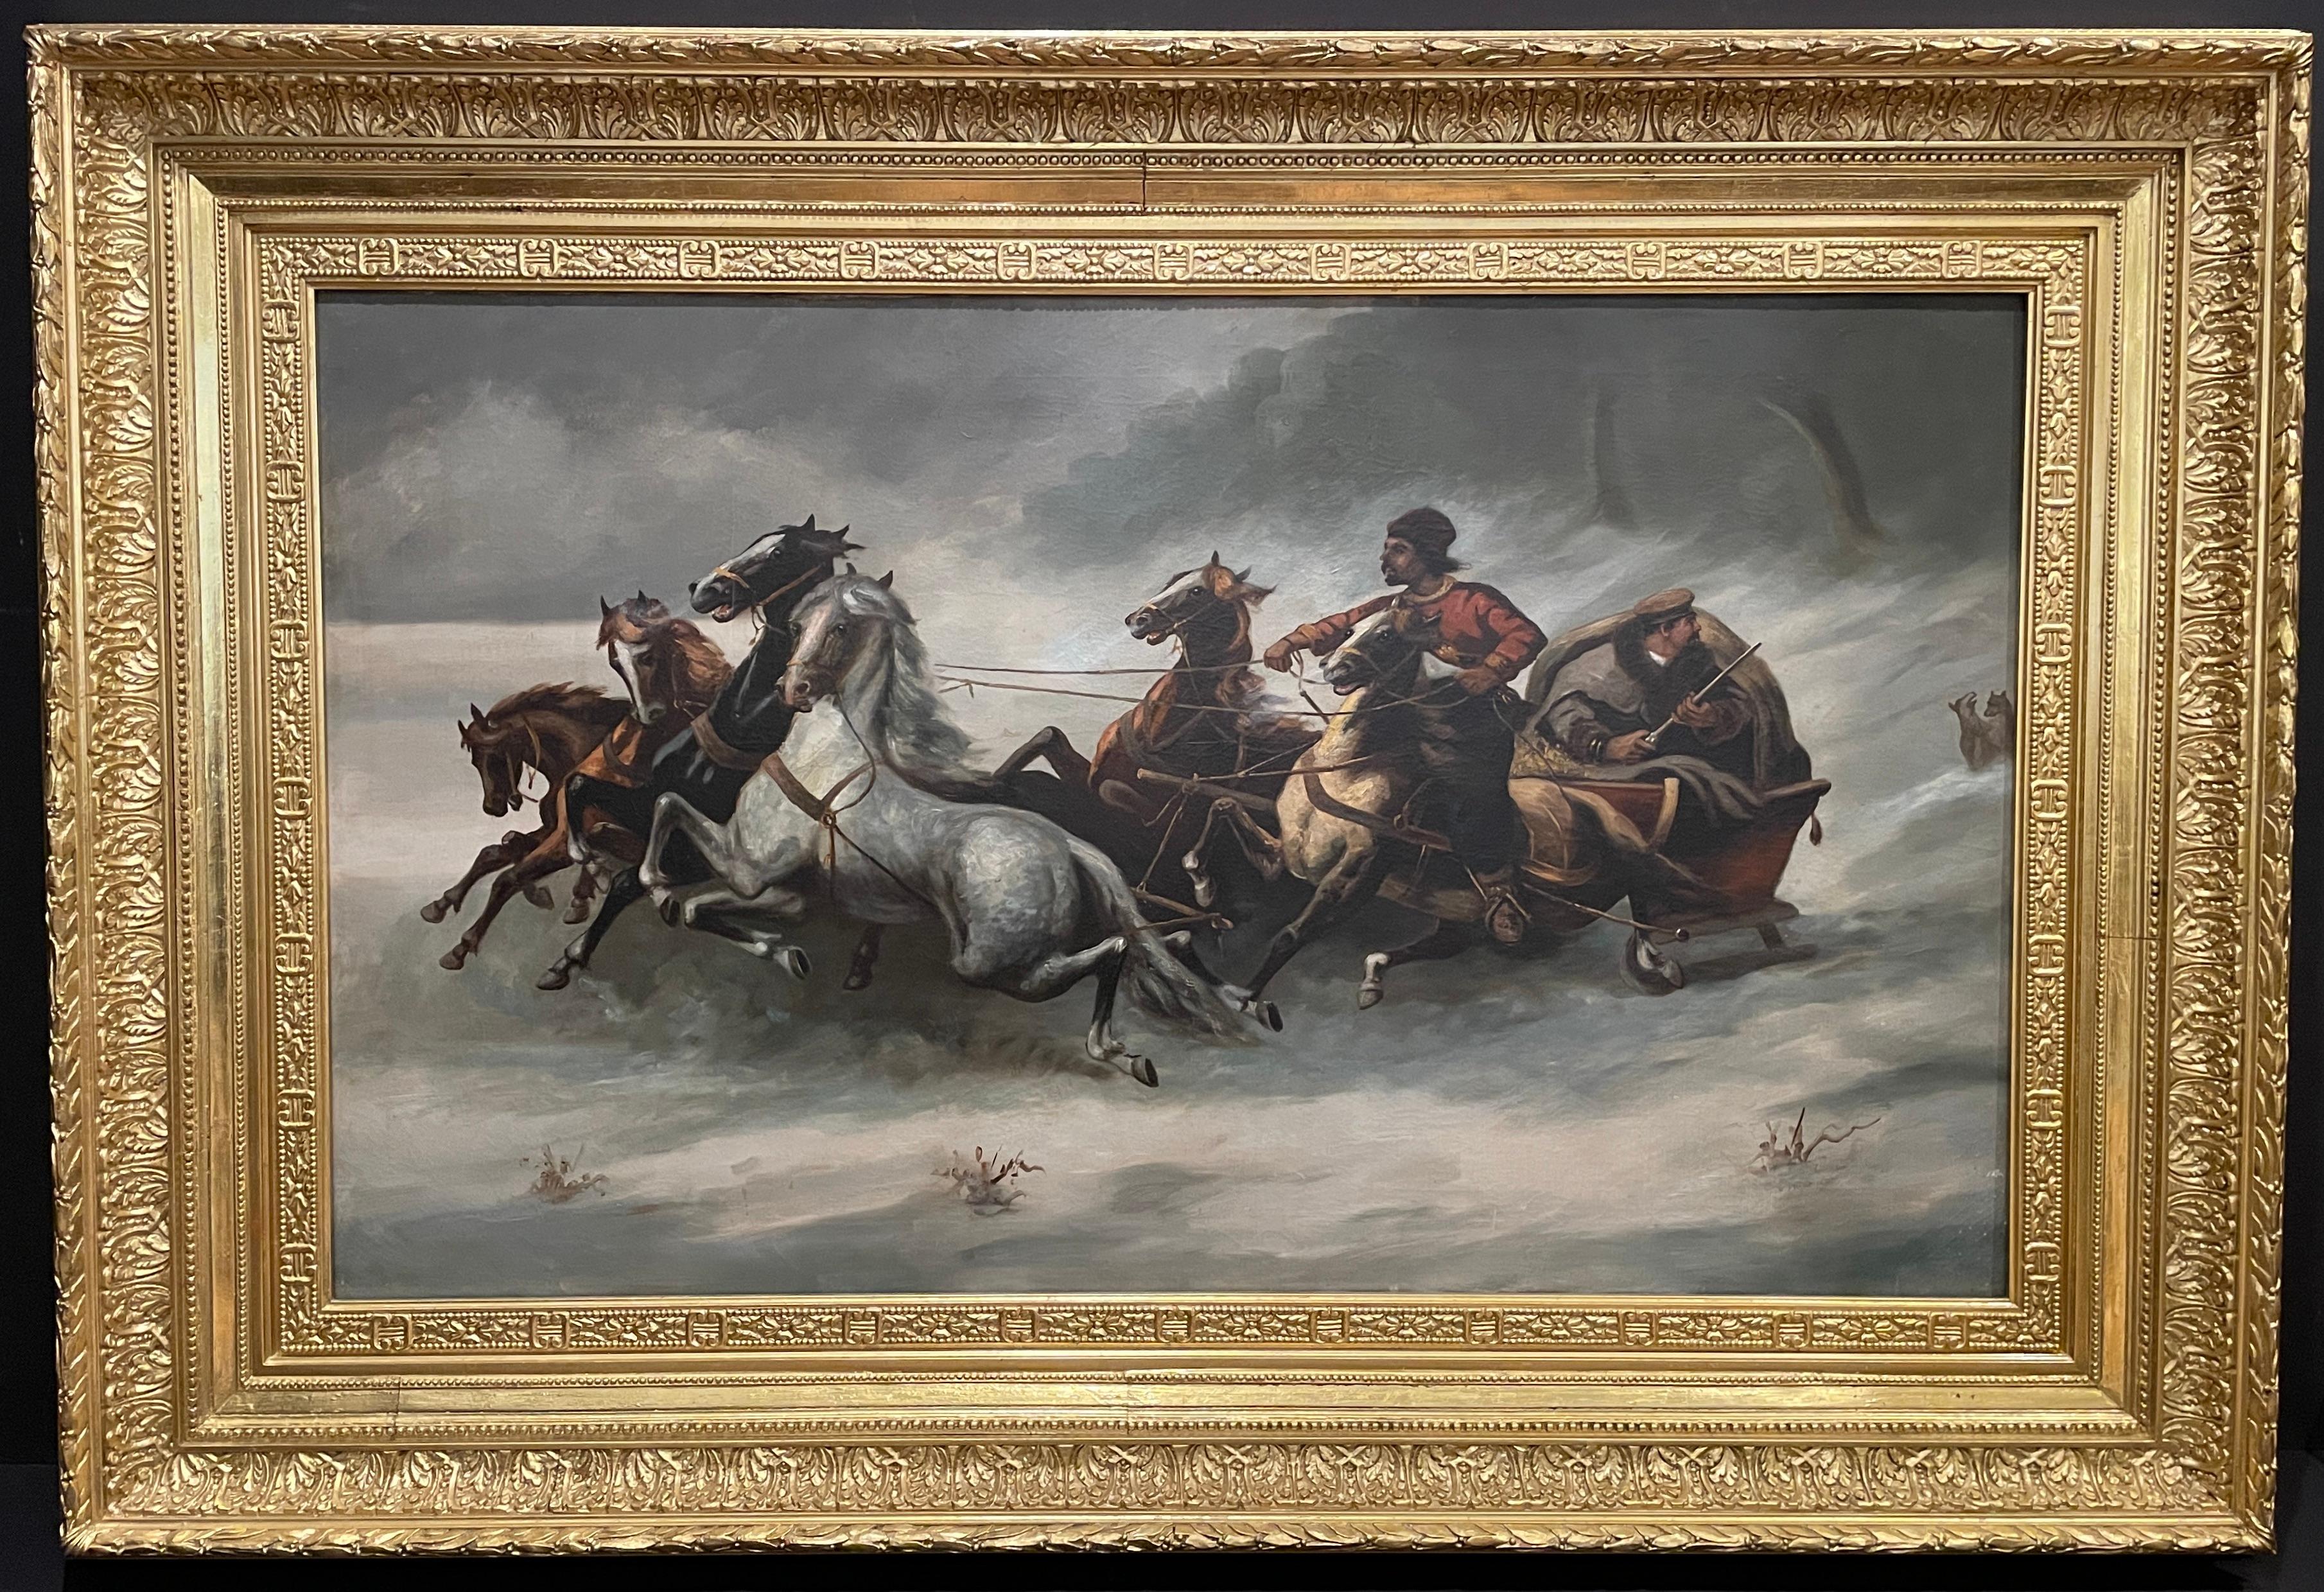 Beeindruckend gut gemaltes russisches Öl auf Leinwand aus dem 19. Jahrhundert mit einer Jagdszene oder Verfolgungsjagd mit einer Troika, die von 6 Pferden im vollen Schritt gezogen wird. Ein mit einem Gewehr bewaffneter Mann sitzt in dem Fahrzeug,